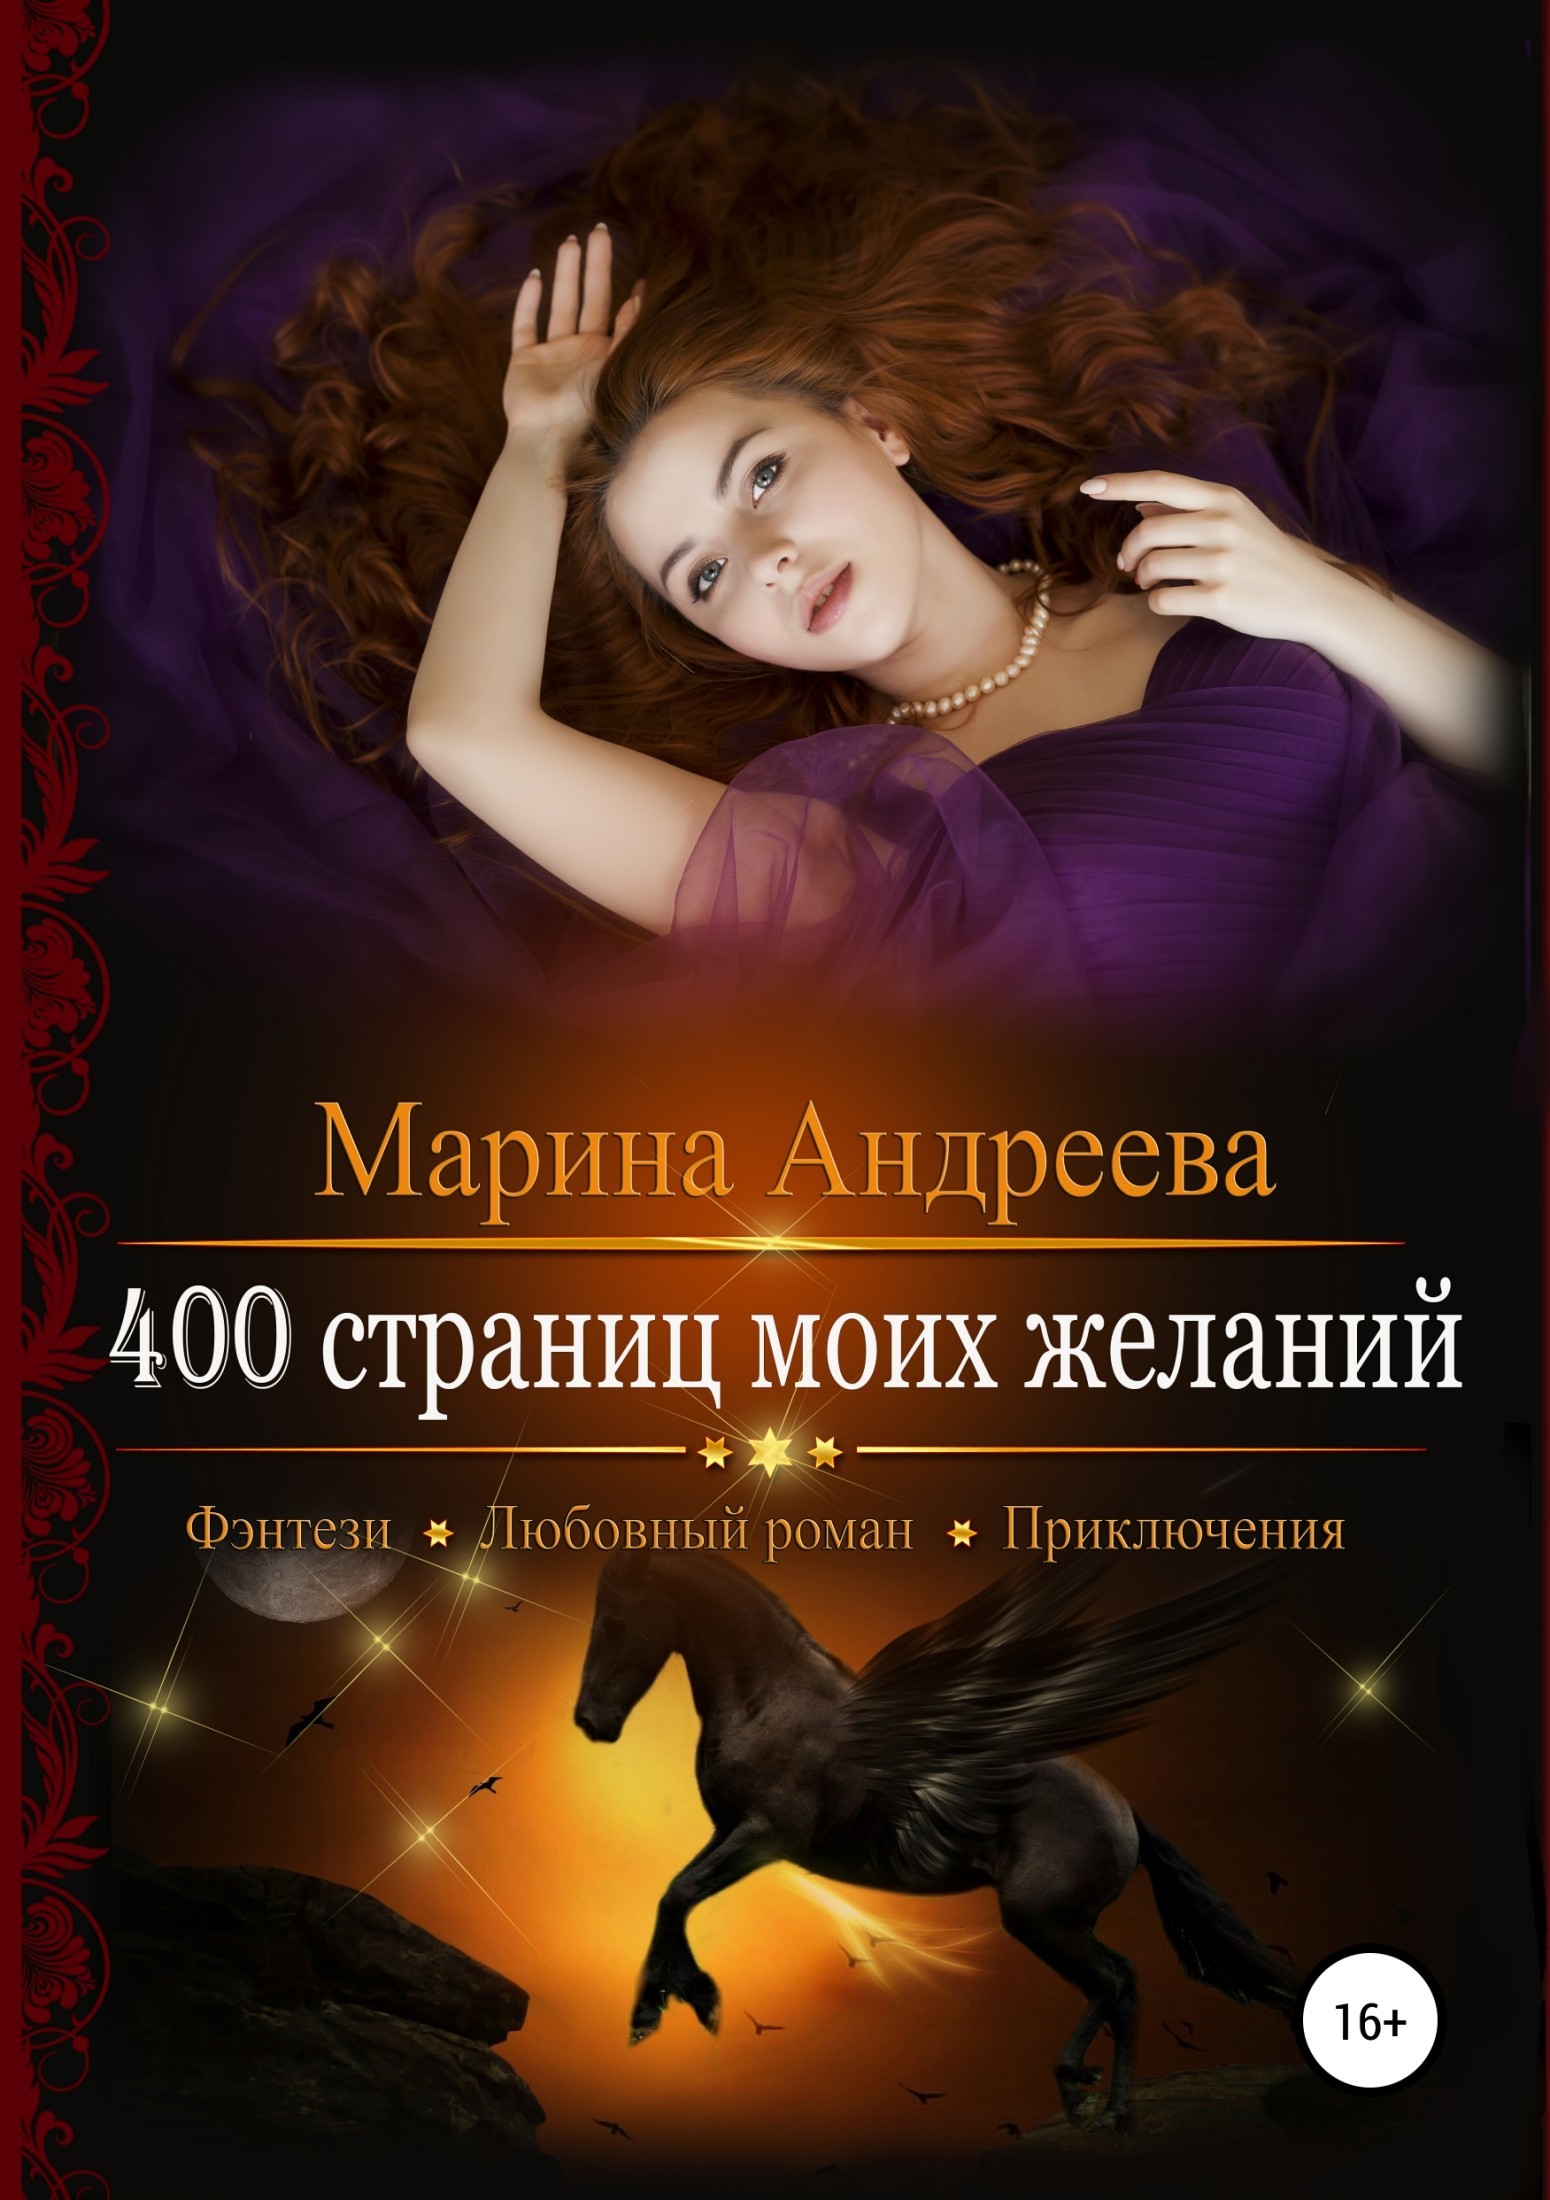 Скачать 400 страниц моих желаний - Марина Андреева